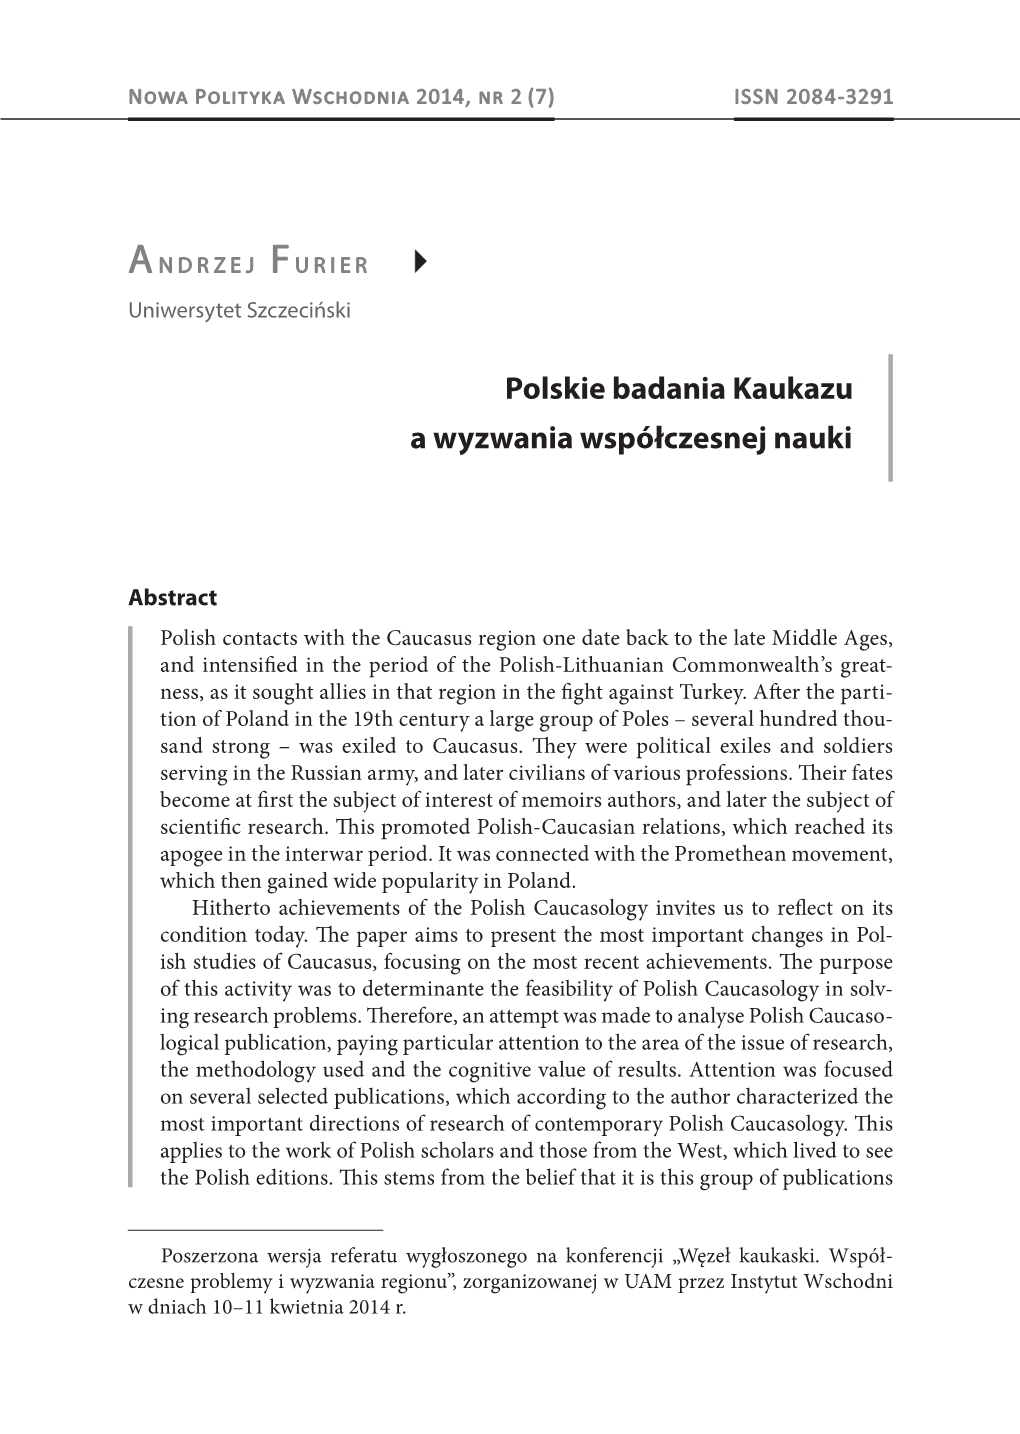 Polskie Badania Kaukazu* a Wyzwania Współczesnej Nauki1